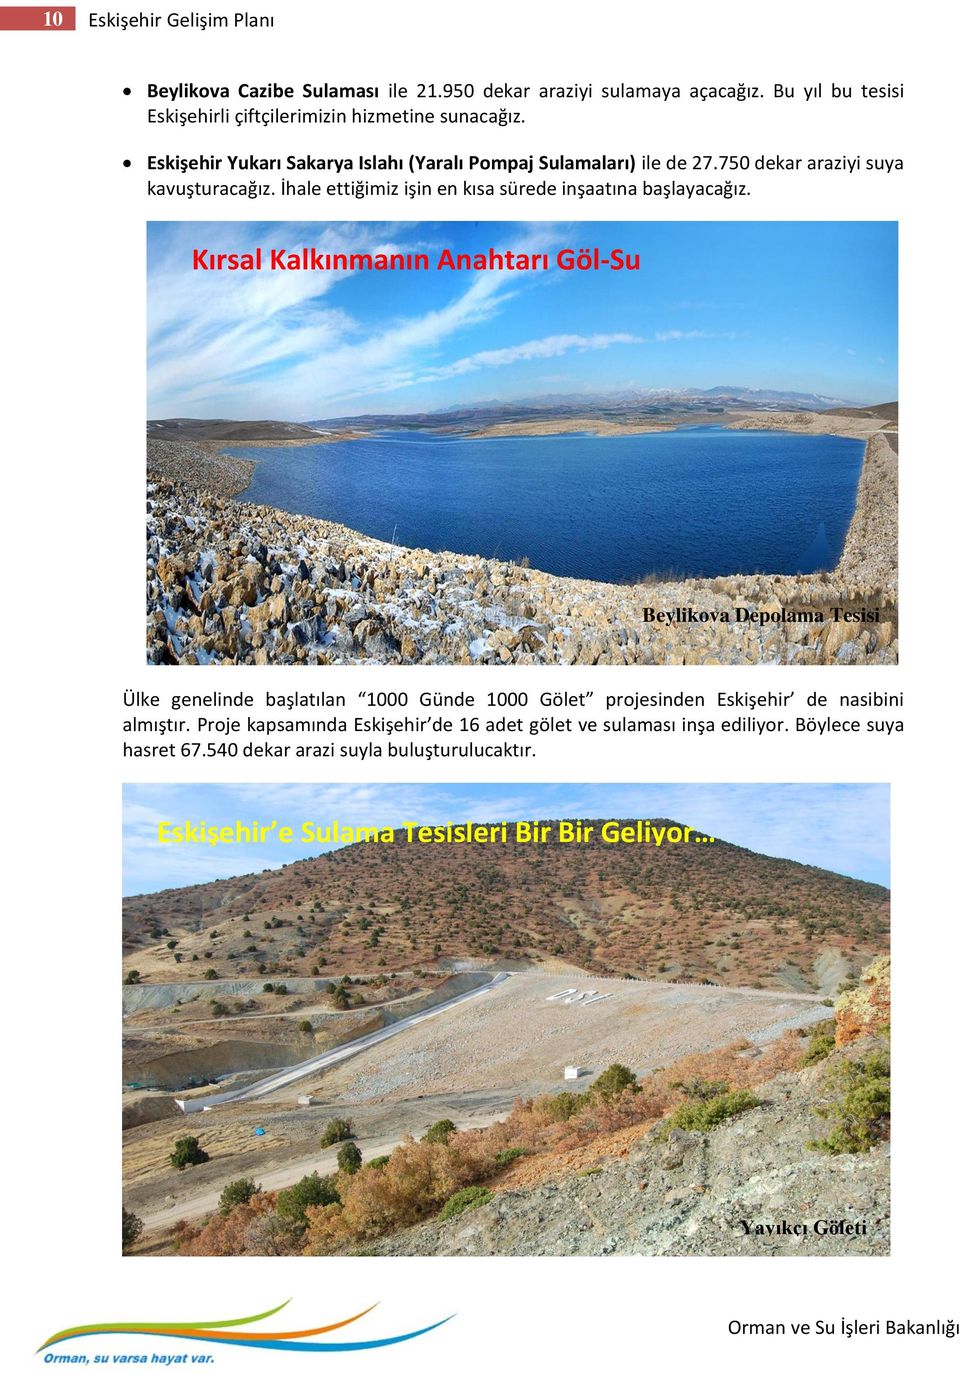 Kırsal Kalkınmanın Anahtarı Göl-Su Beylikova Depolama Tesisi Ülke genelinde başlatılan 1000 Günde 1000 Gölet projesinden Eskişehir de nasibini almıştır.